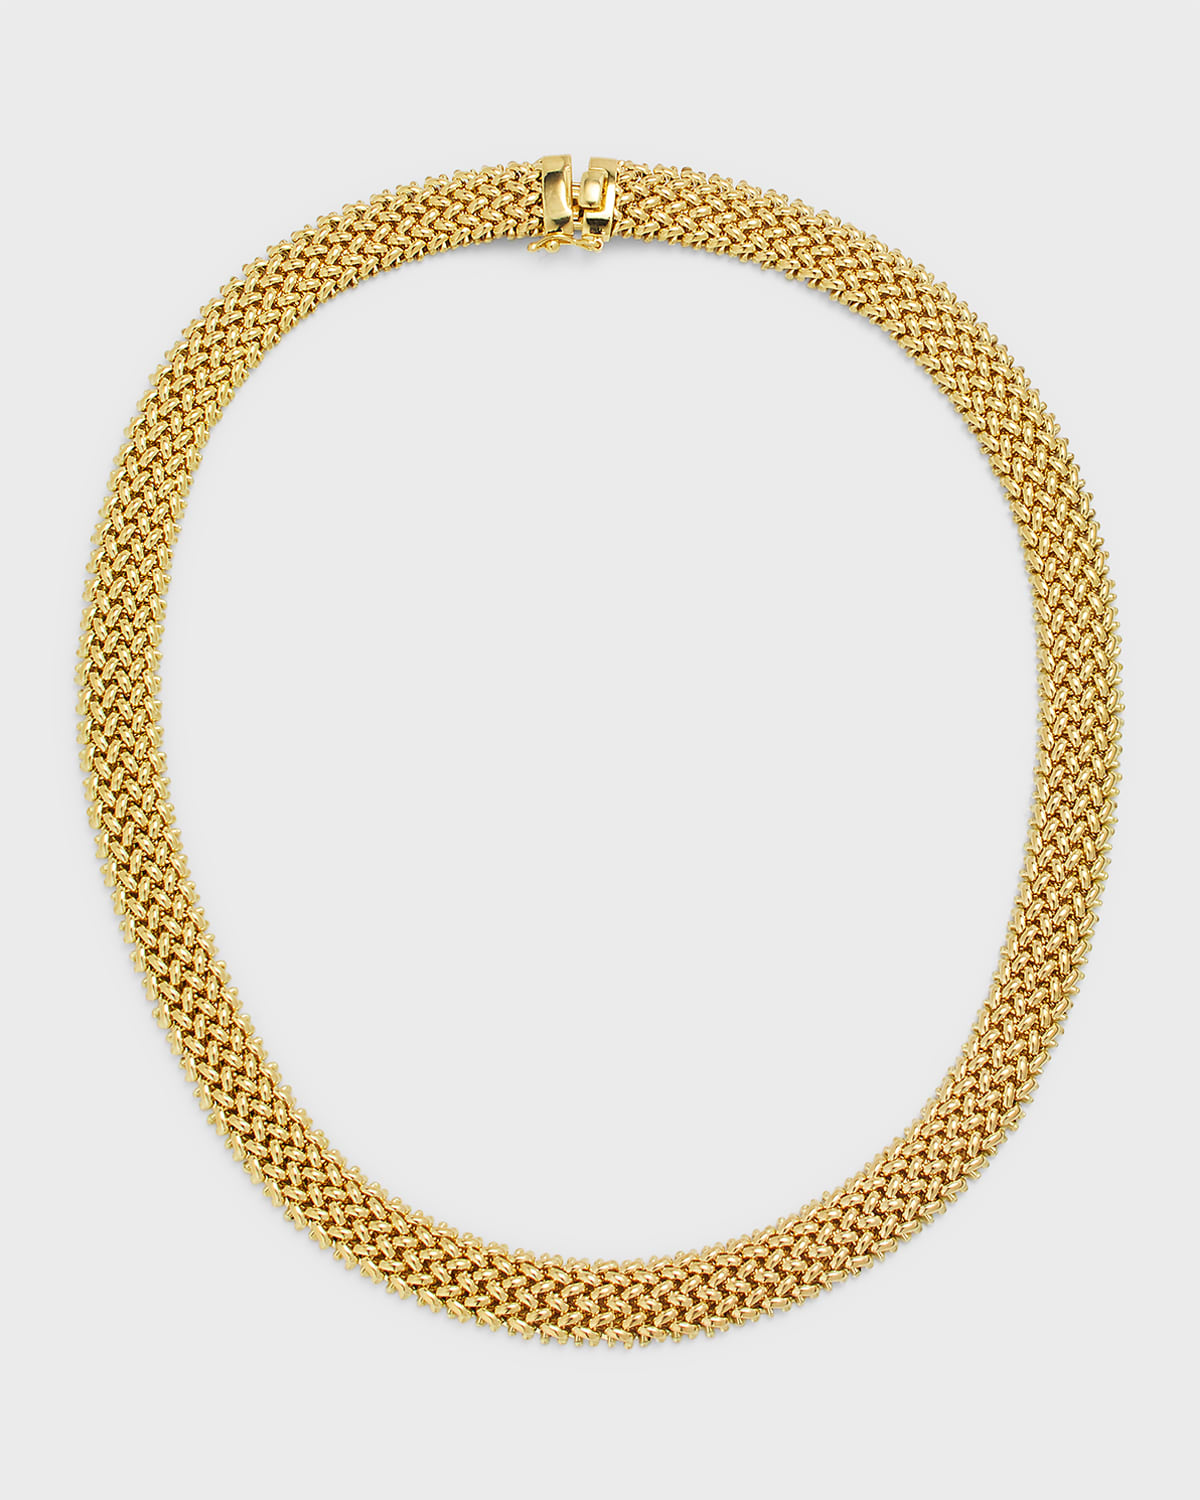 18K Yellow Gold Via Ornato Chicco Chain Necklace, 10mm